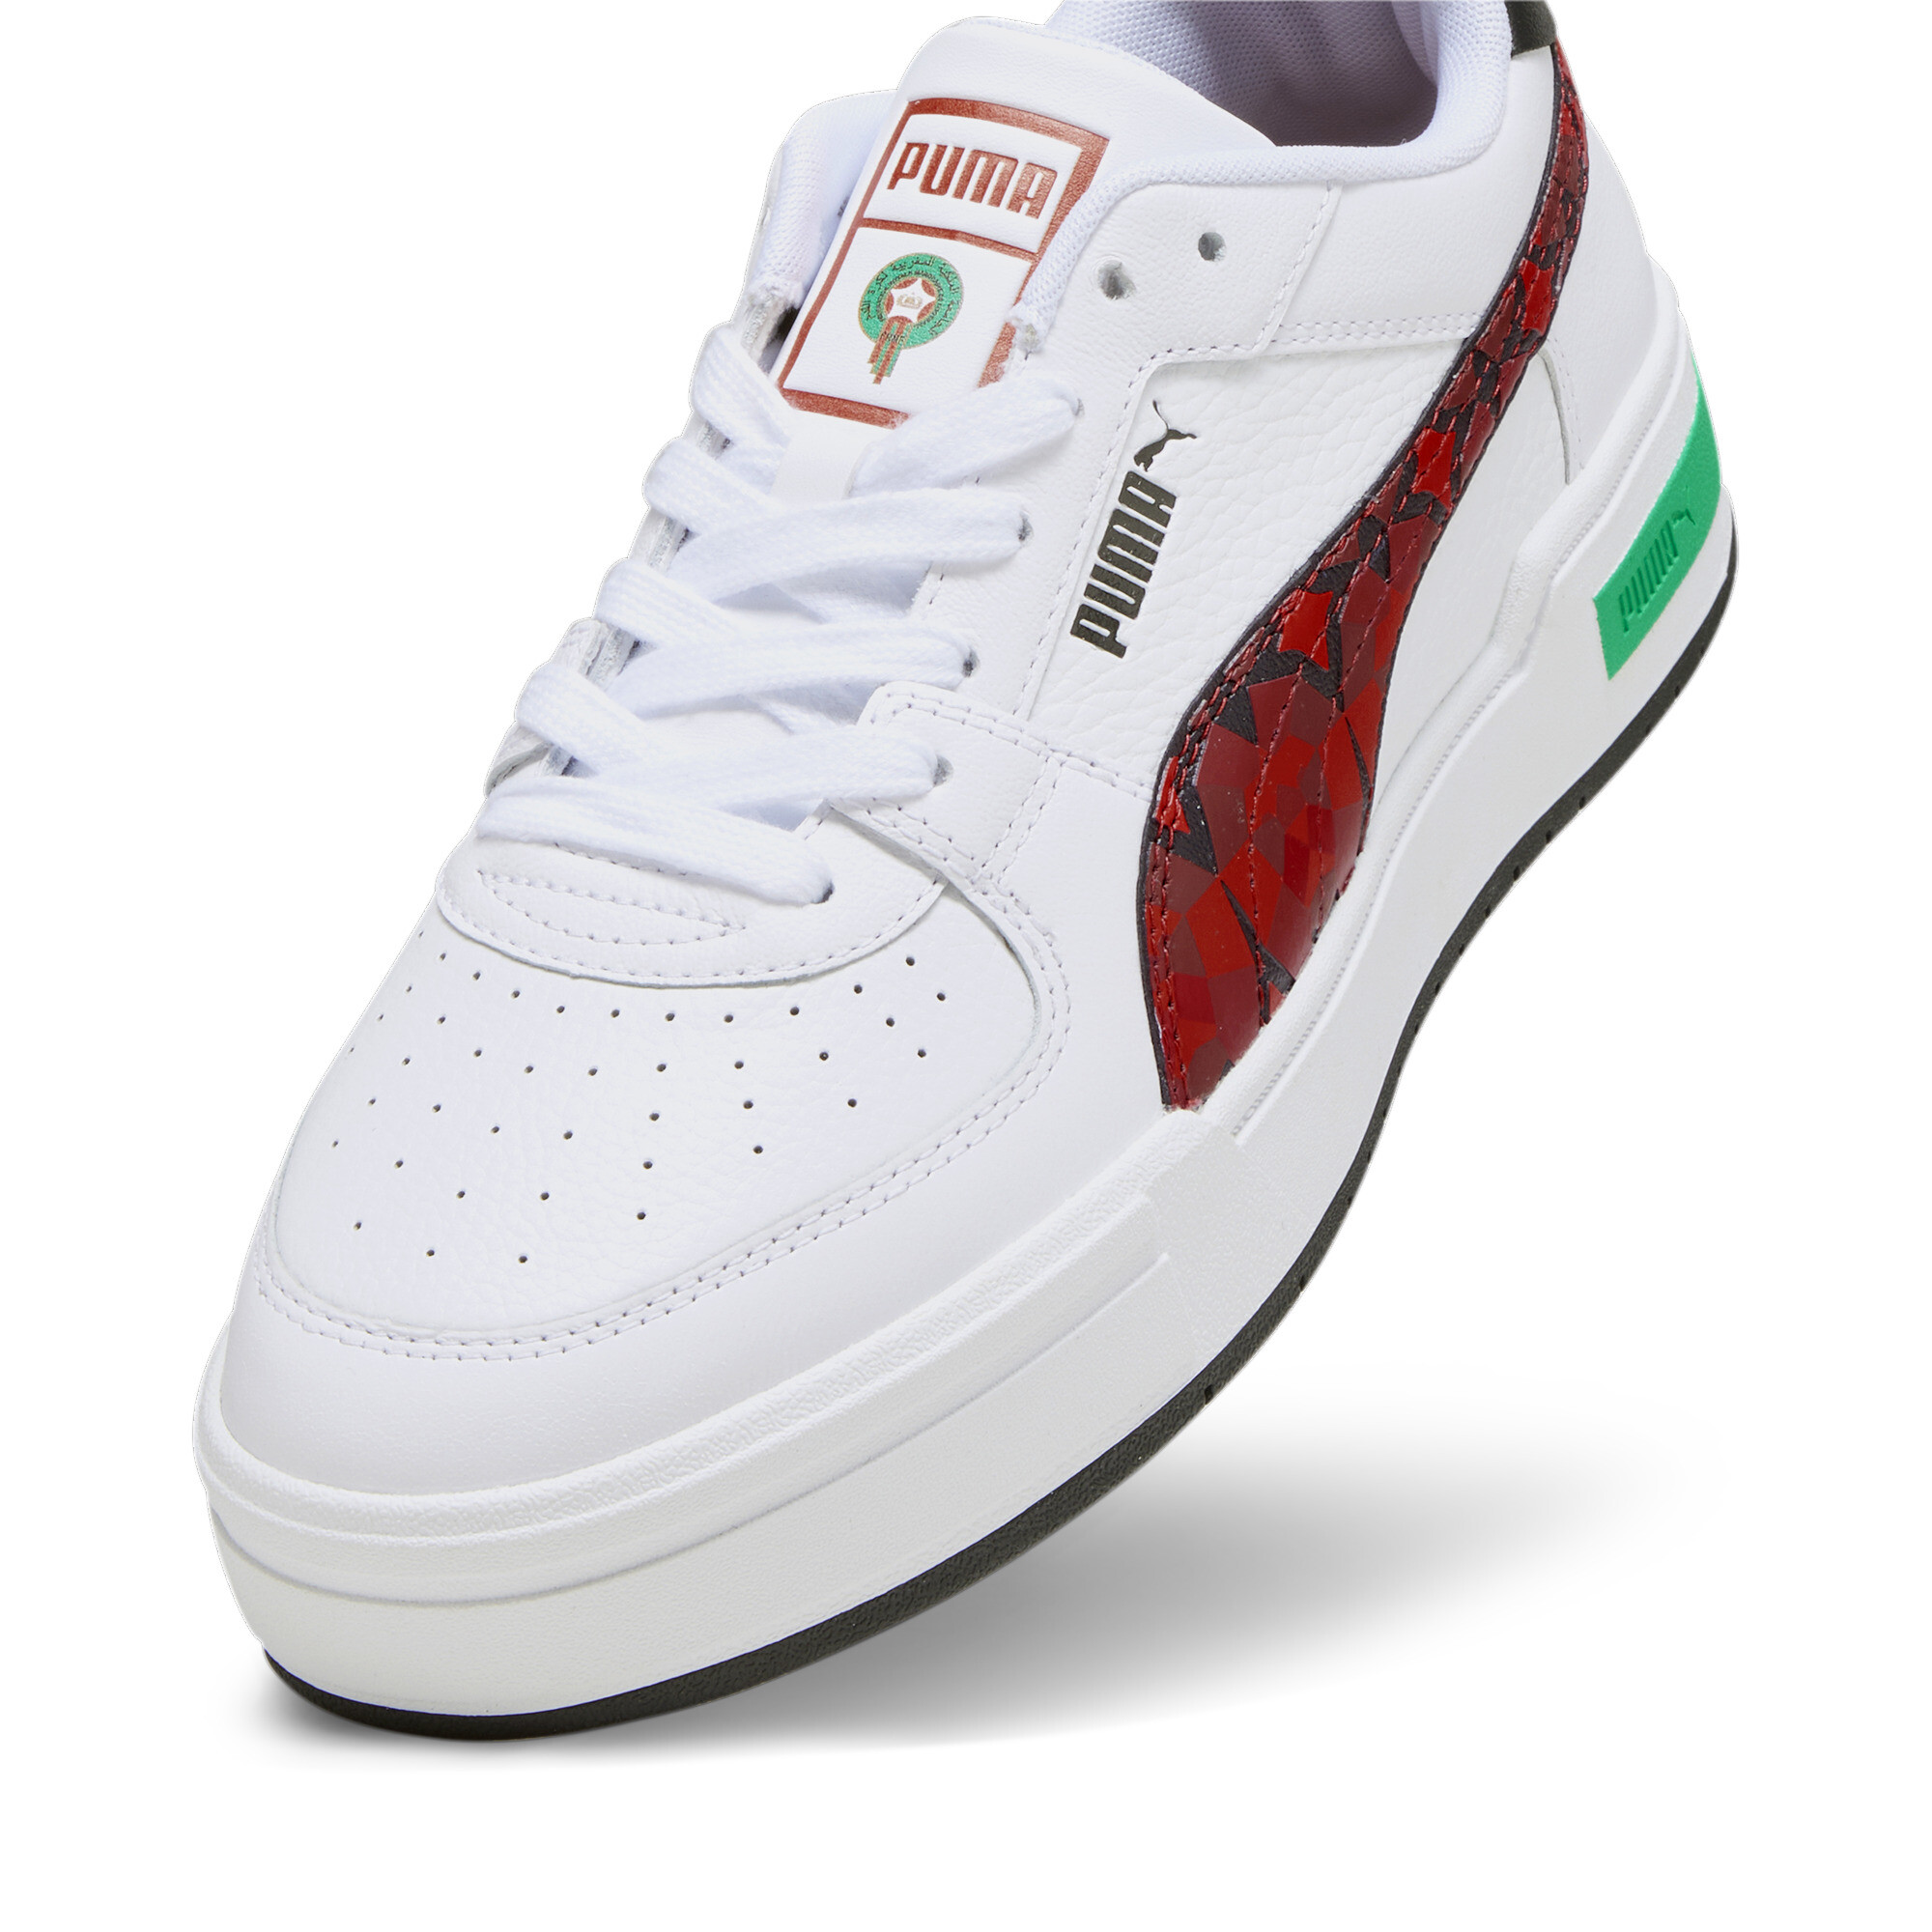 Men's PUMA CA Pro Morocco Football Sneakers In White, Size EU 44.5